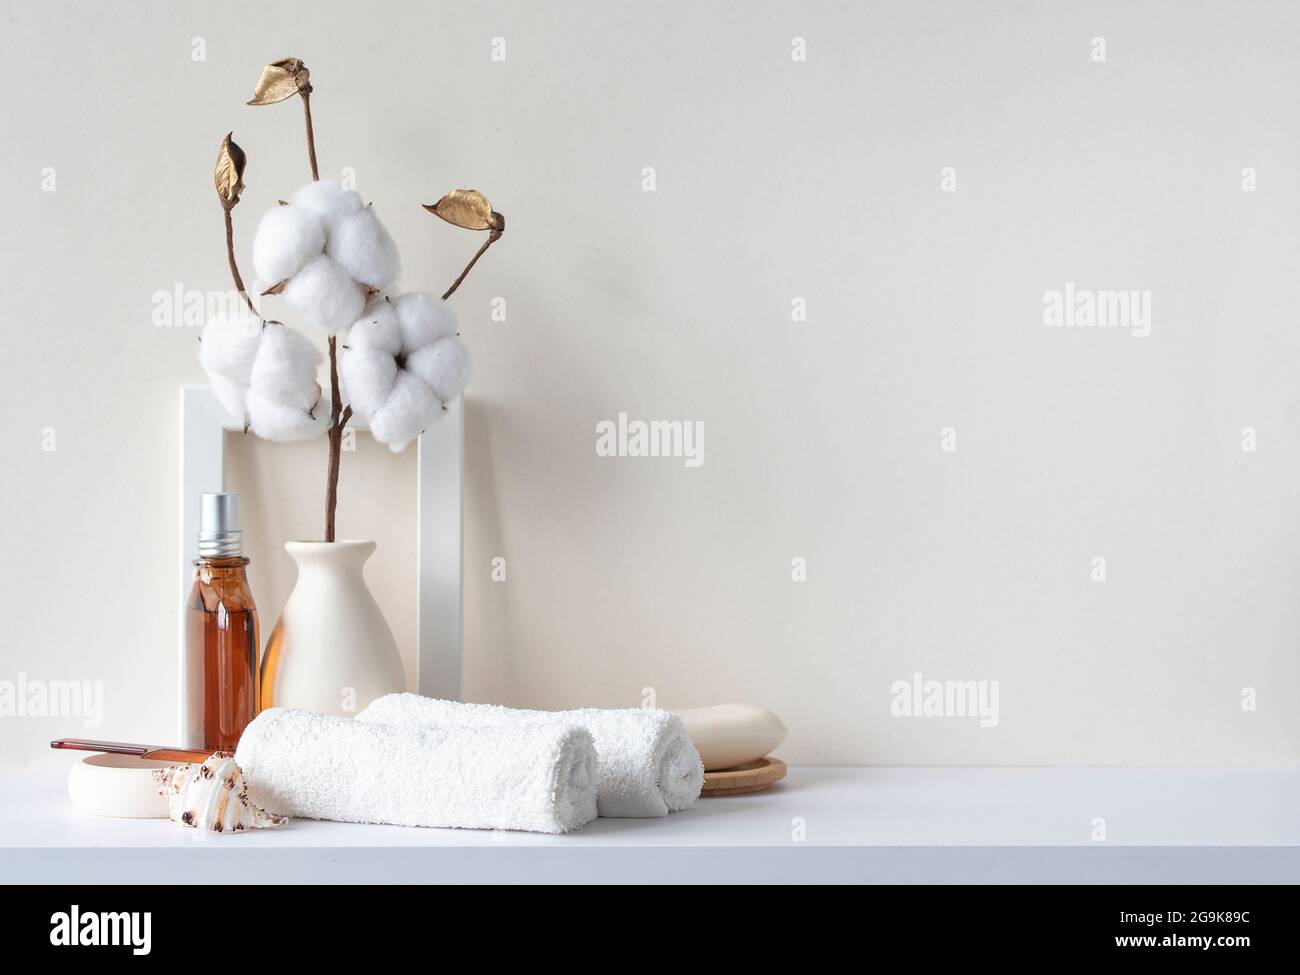 Gli interni del bagno sono in tonalità pastello beige. Ripiano bianco in bagno con asciugamani, sapone, bottiglia di profumo, spazzola per capelli, piante di casa. Mockup con spazio per il testo. Foto Stock